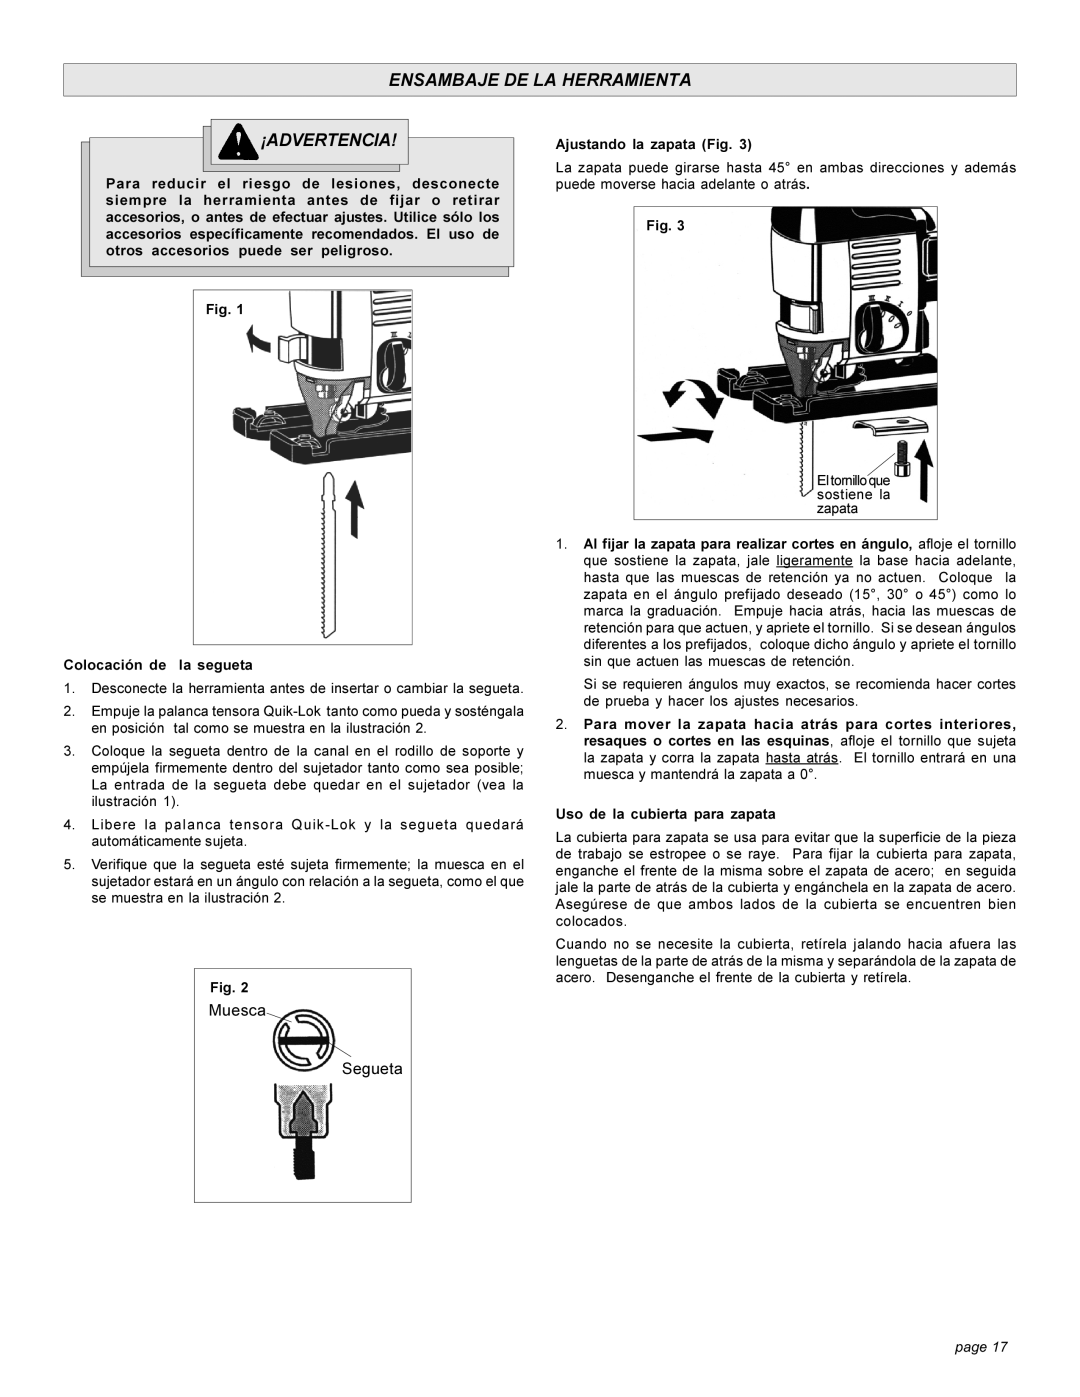 Milwaukee 626, 6276 manual Ensambaje De La Herramienta, ¡Advertencia, Muesca, Segueta, page 